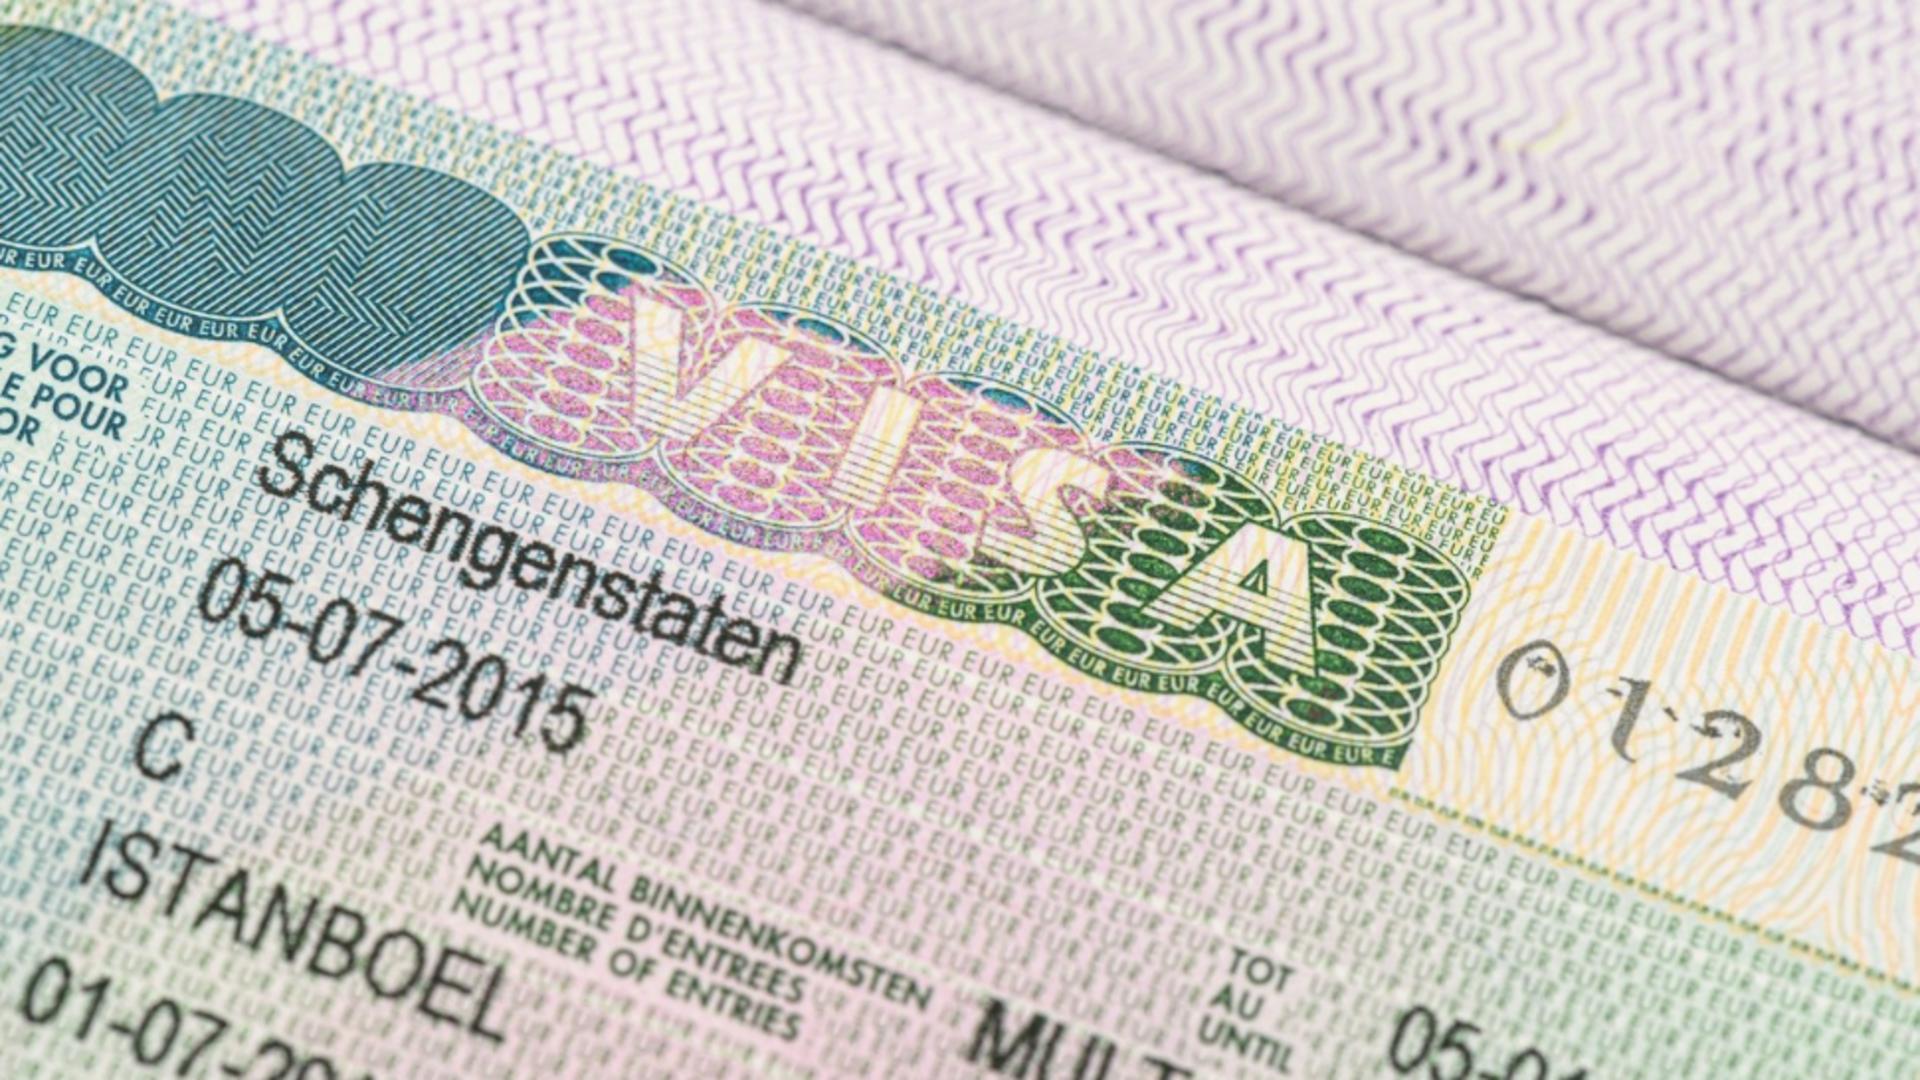 Parlamentul European introduce vizele electronice Schengen. Foto: Profimedia